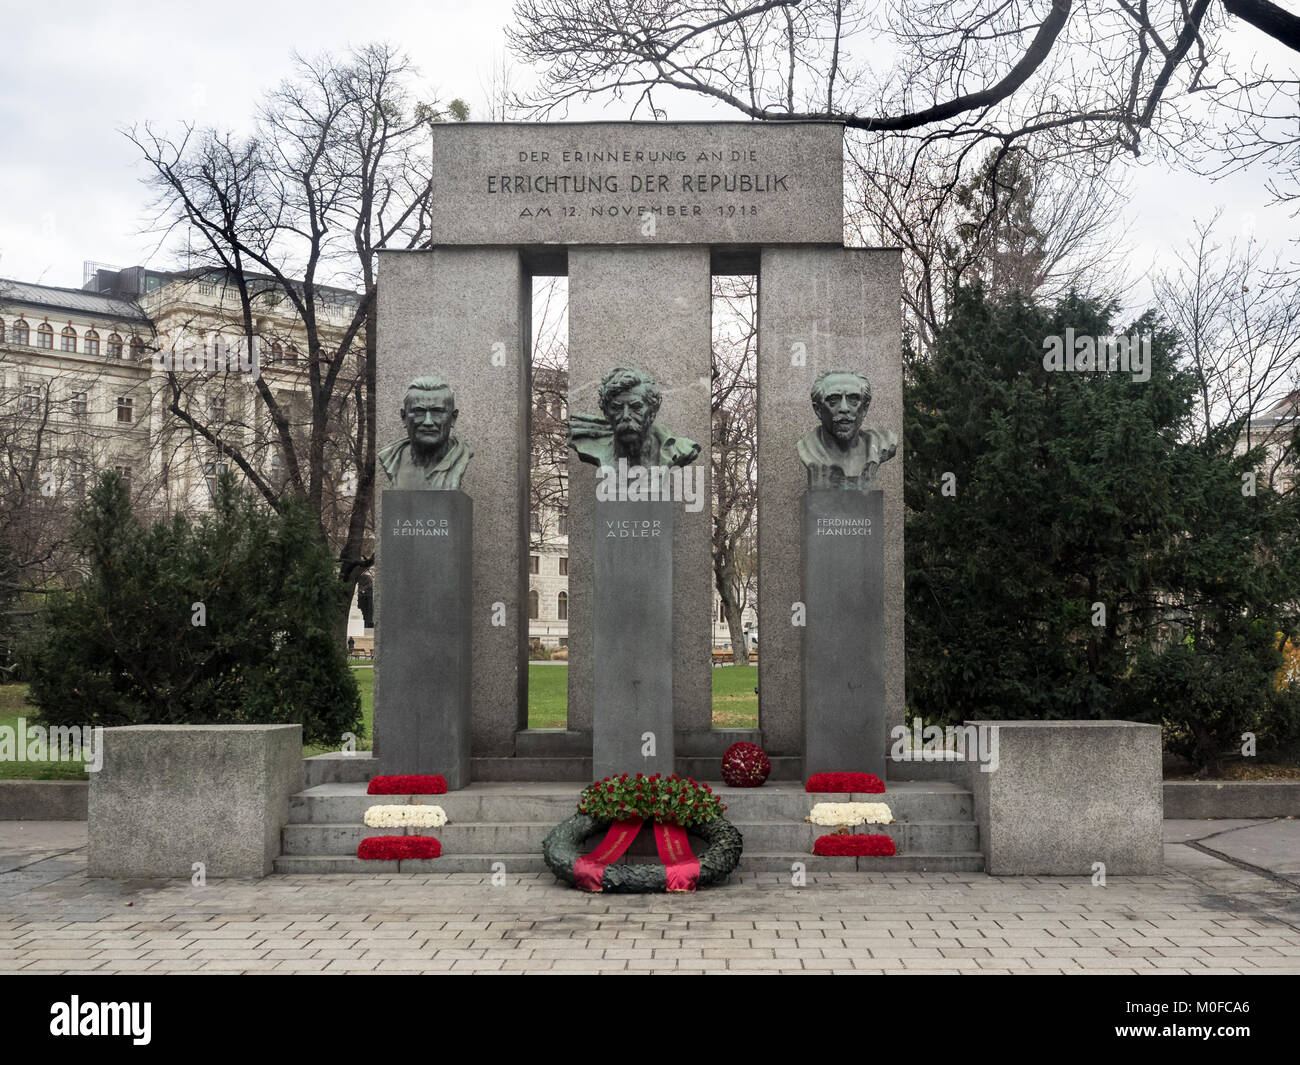 VIENNE, AUTRICHE, 06 DÉCEMBRE 2017 : Monument de la République (Errichtung der Republik) Mémorial peu de temps après la pose de la couronne sur l'anniversaire Banque D'Images